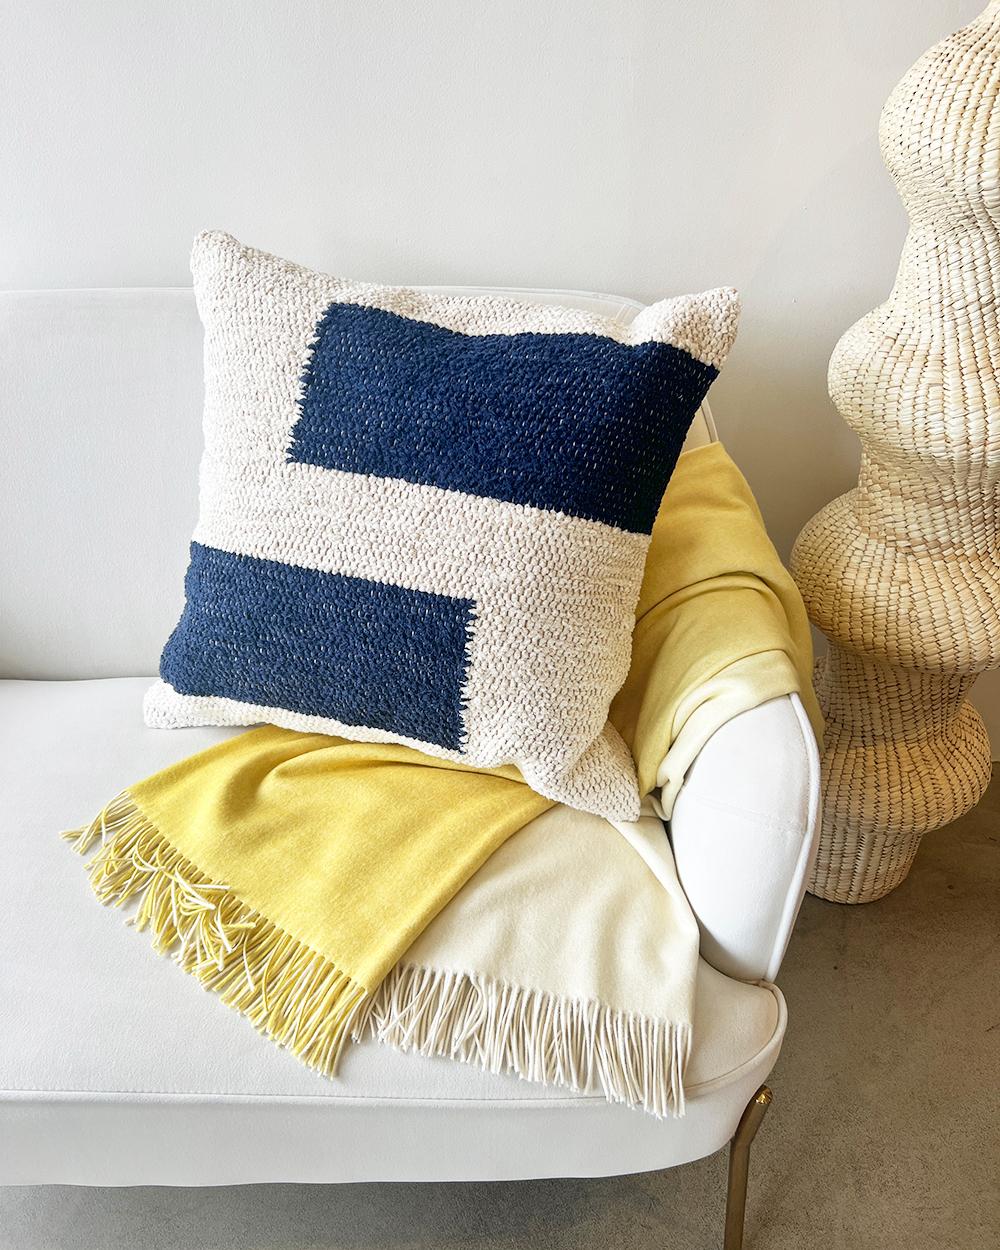 Dieses marineblaue und cremefarbene Baumwollkissen ist aus dicker, handgewebter Baumwolle gefertigt und eignet sich perfekt für stark frequentierte Bereiche wie die Couch im Wohnzimmer. Legen Sie zwei passende Kissen auf jede Seite der Couch oder